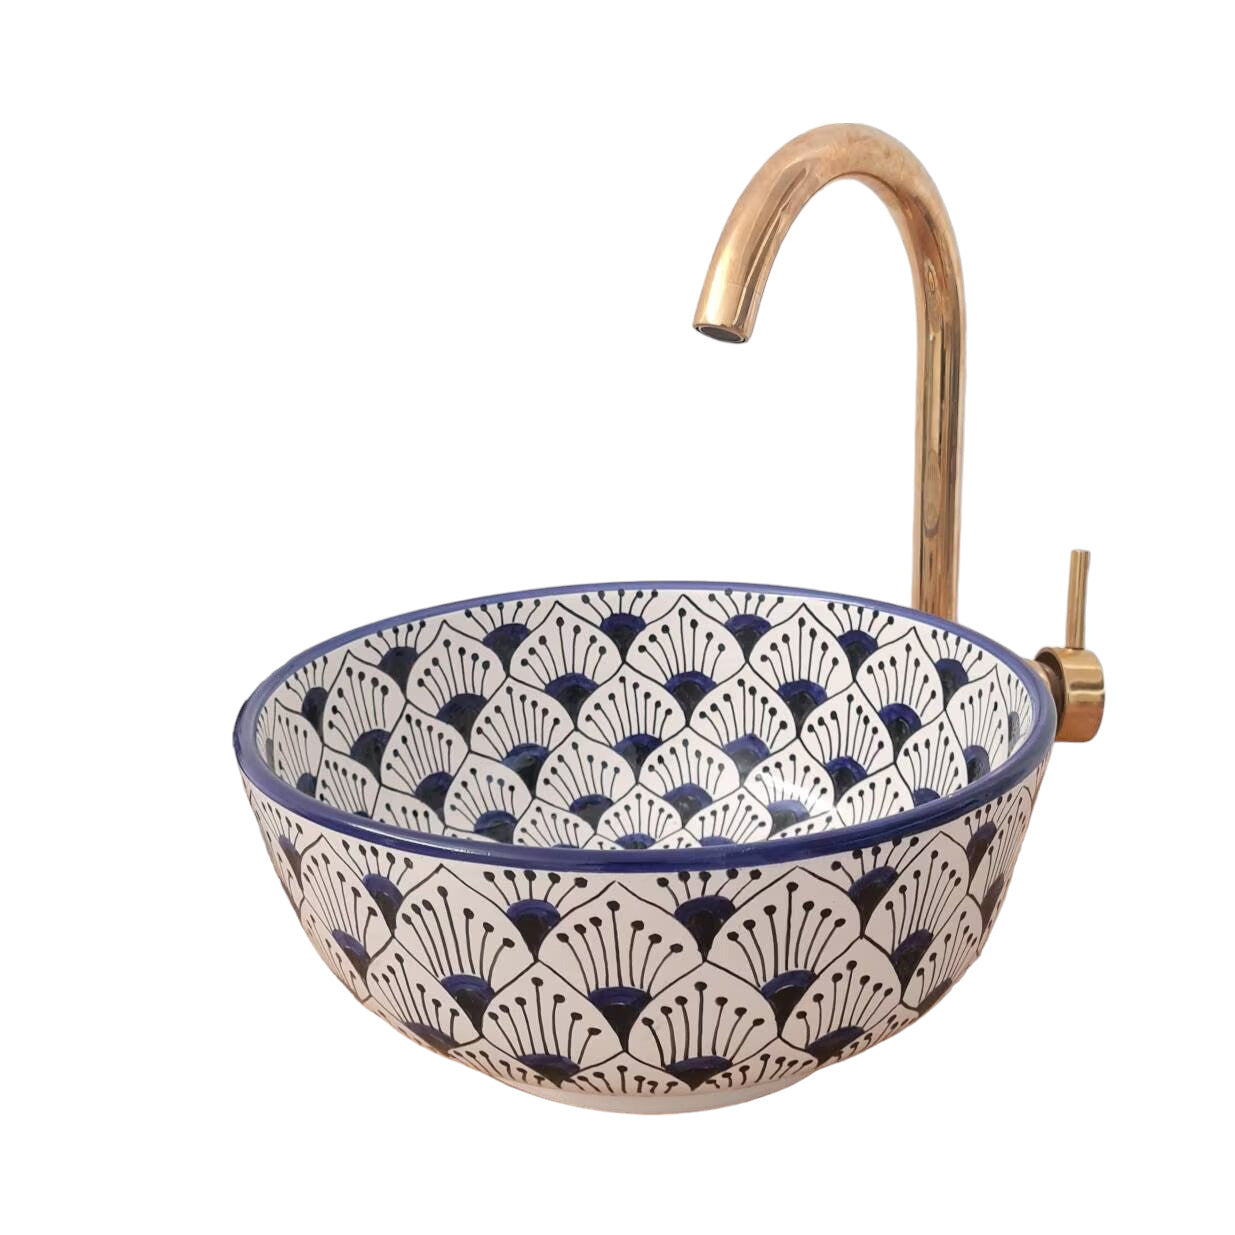 Moroccan sink | moroccan ceramic sink | bathroom sink | moroccan bathroom basin | cloakroom basin | Bleu sink #10